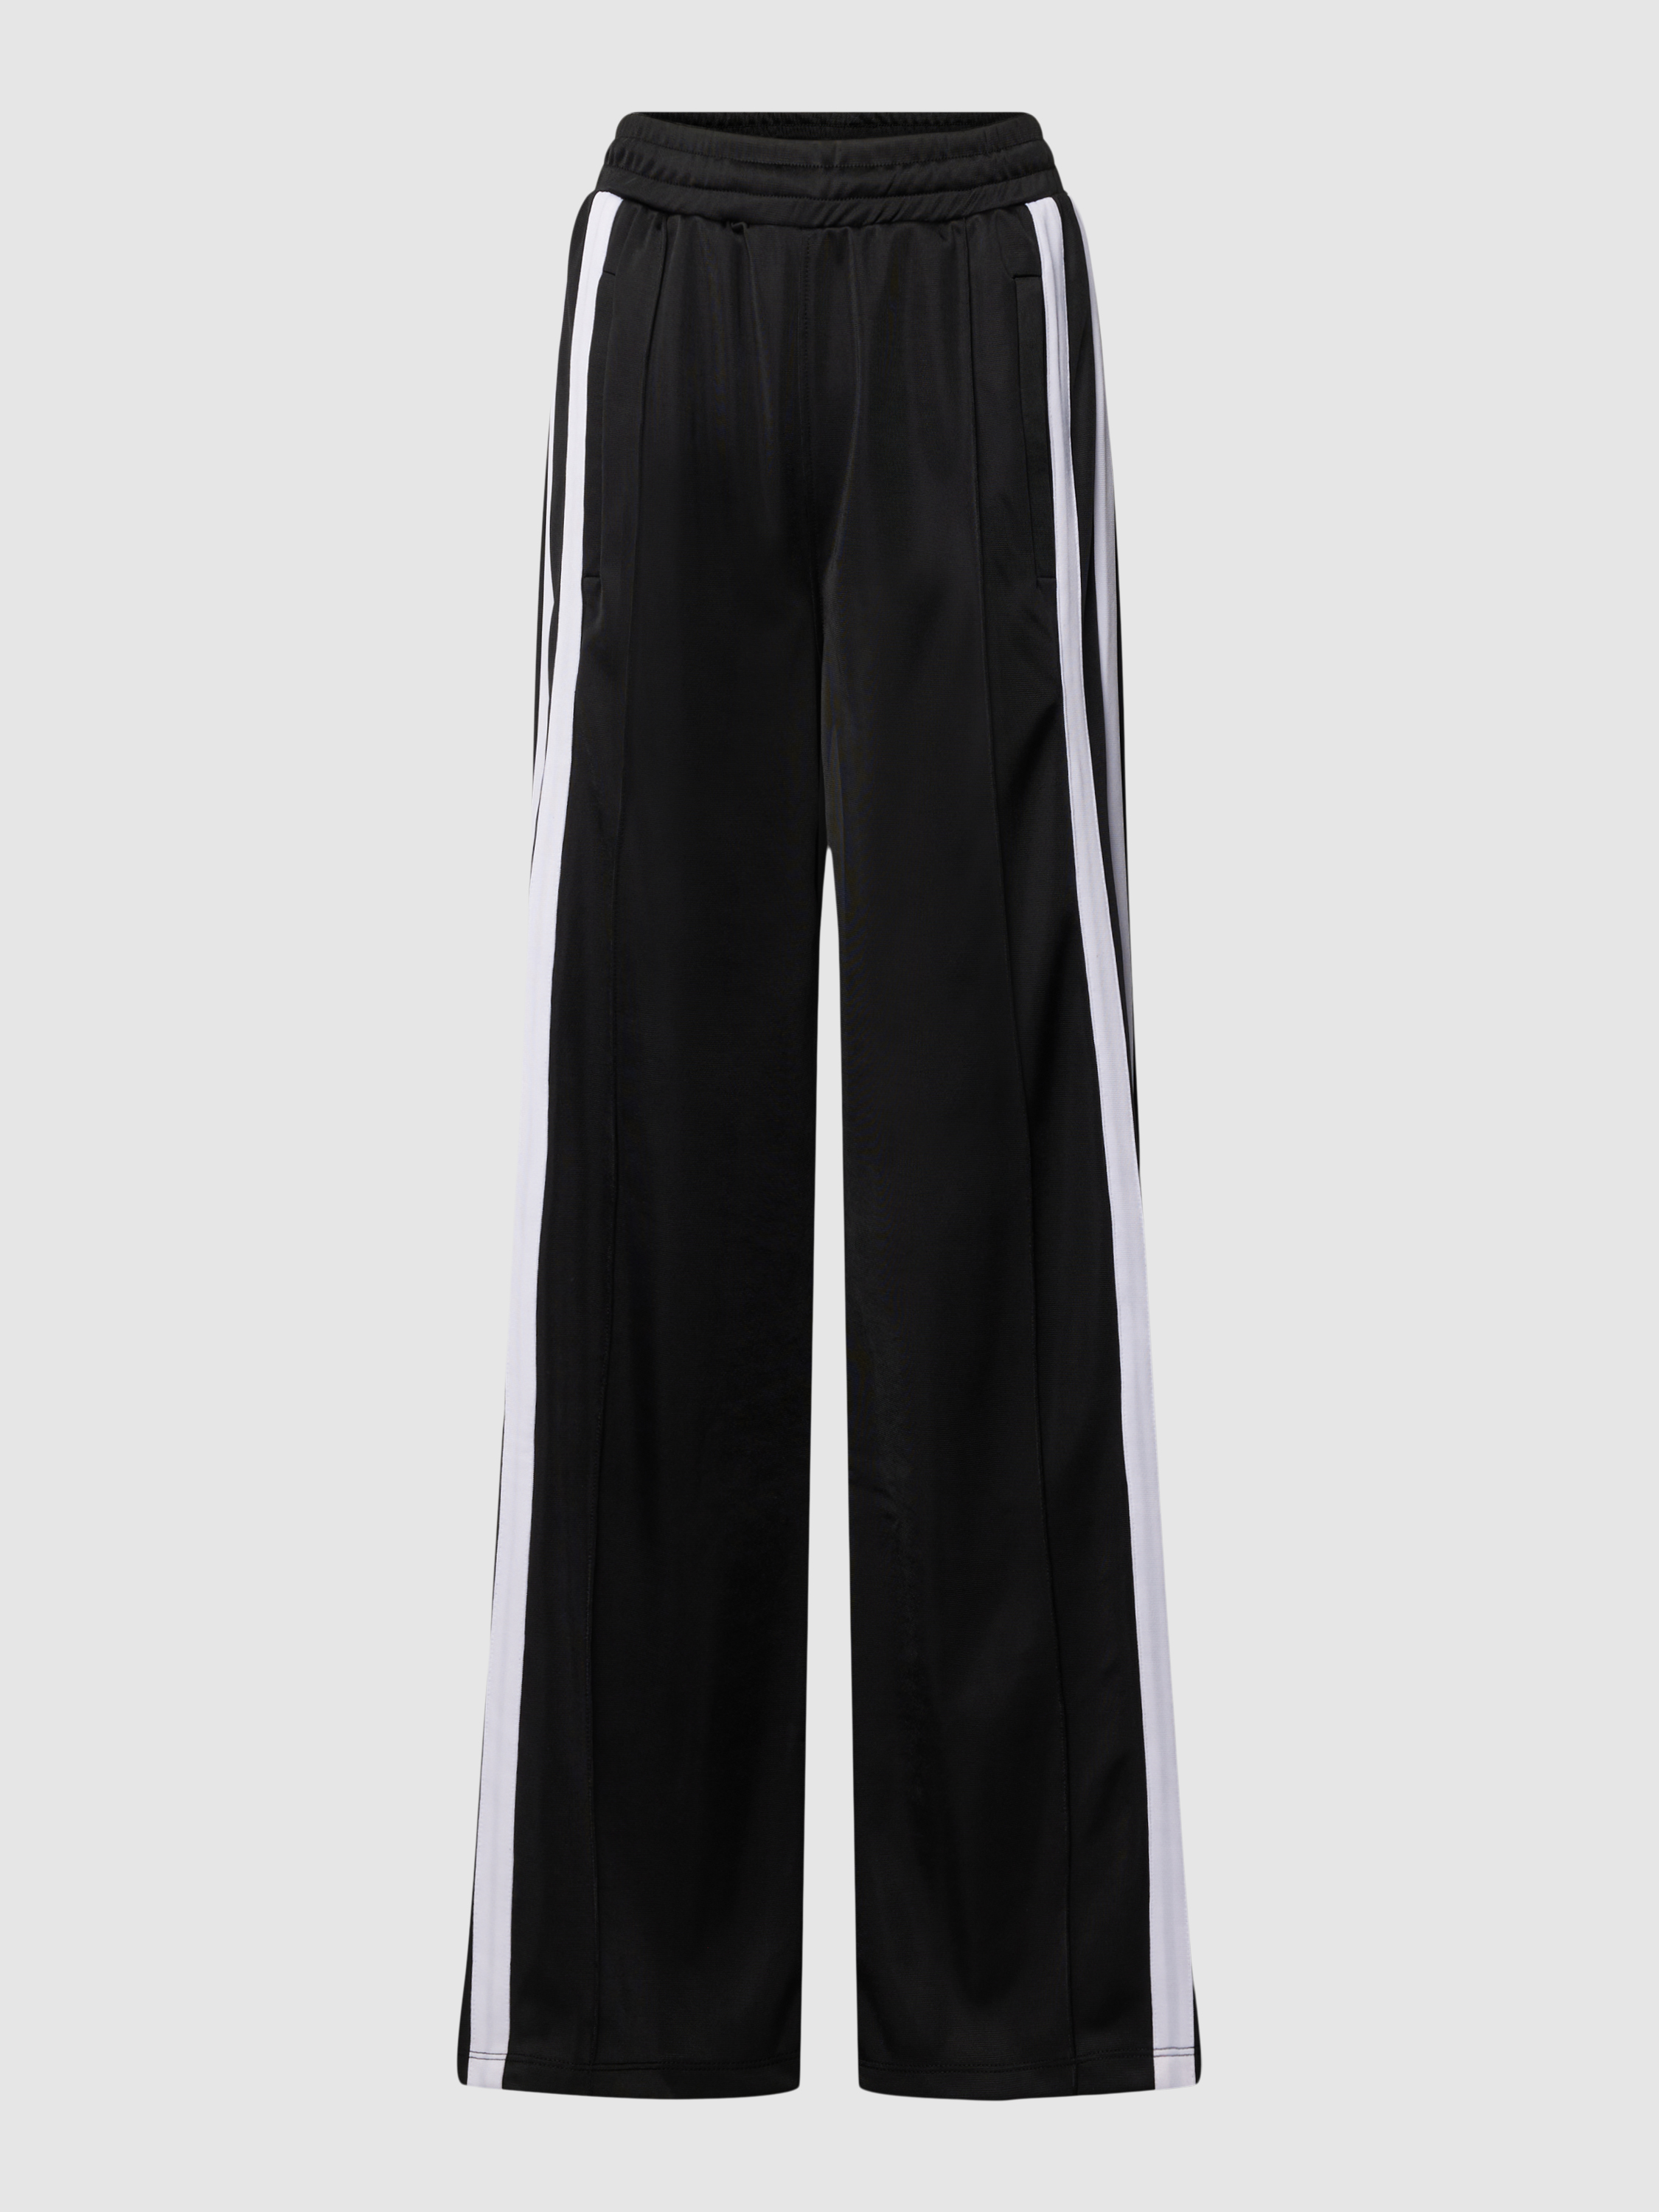 Спортивные брюки женские Karo Kauer 1903335 черные XS (доставка из-за рубежа)